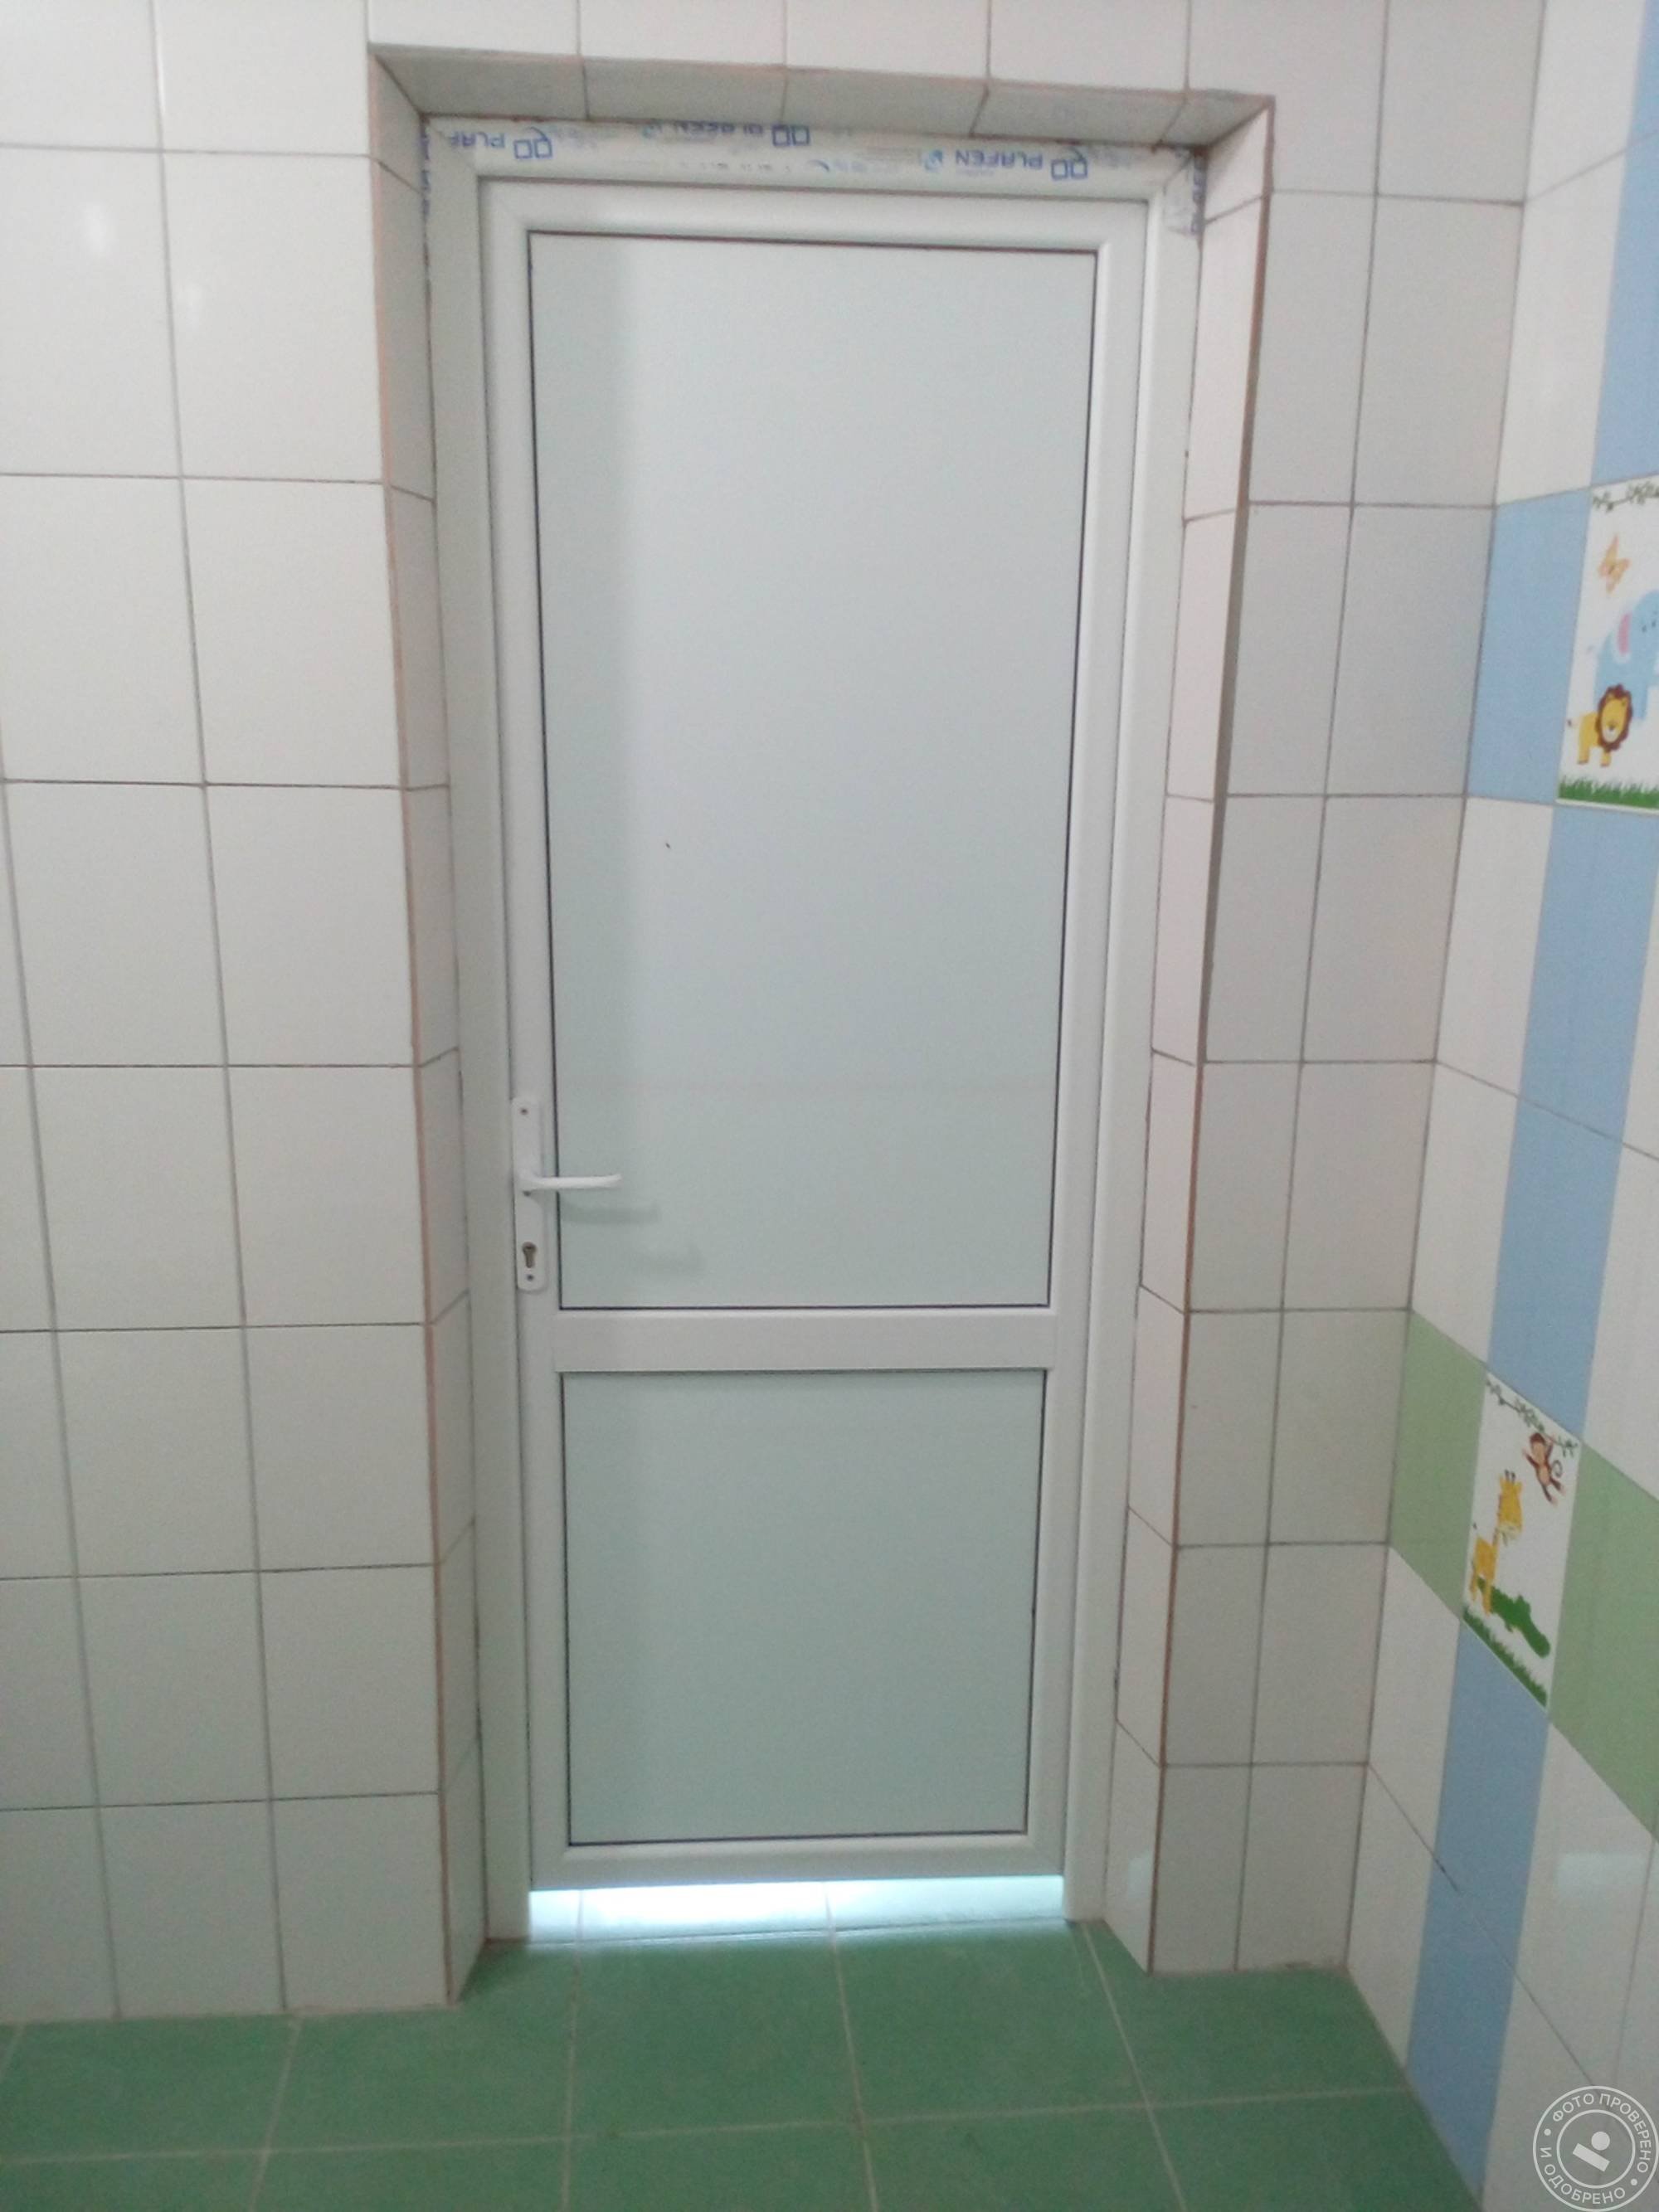 Пластиковые двери для ванны. Пластиковая дверь в санузел. Пластиковая дверь в туалет. Пластиковая дверь в ванную комнату. Пластиковые двери в ванную и туалет.